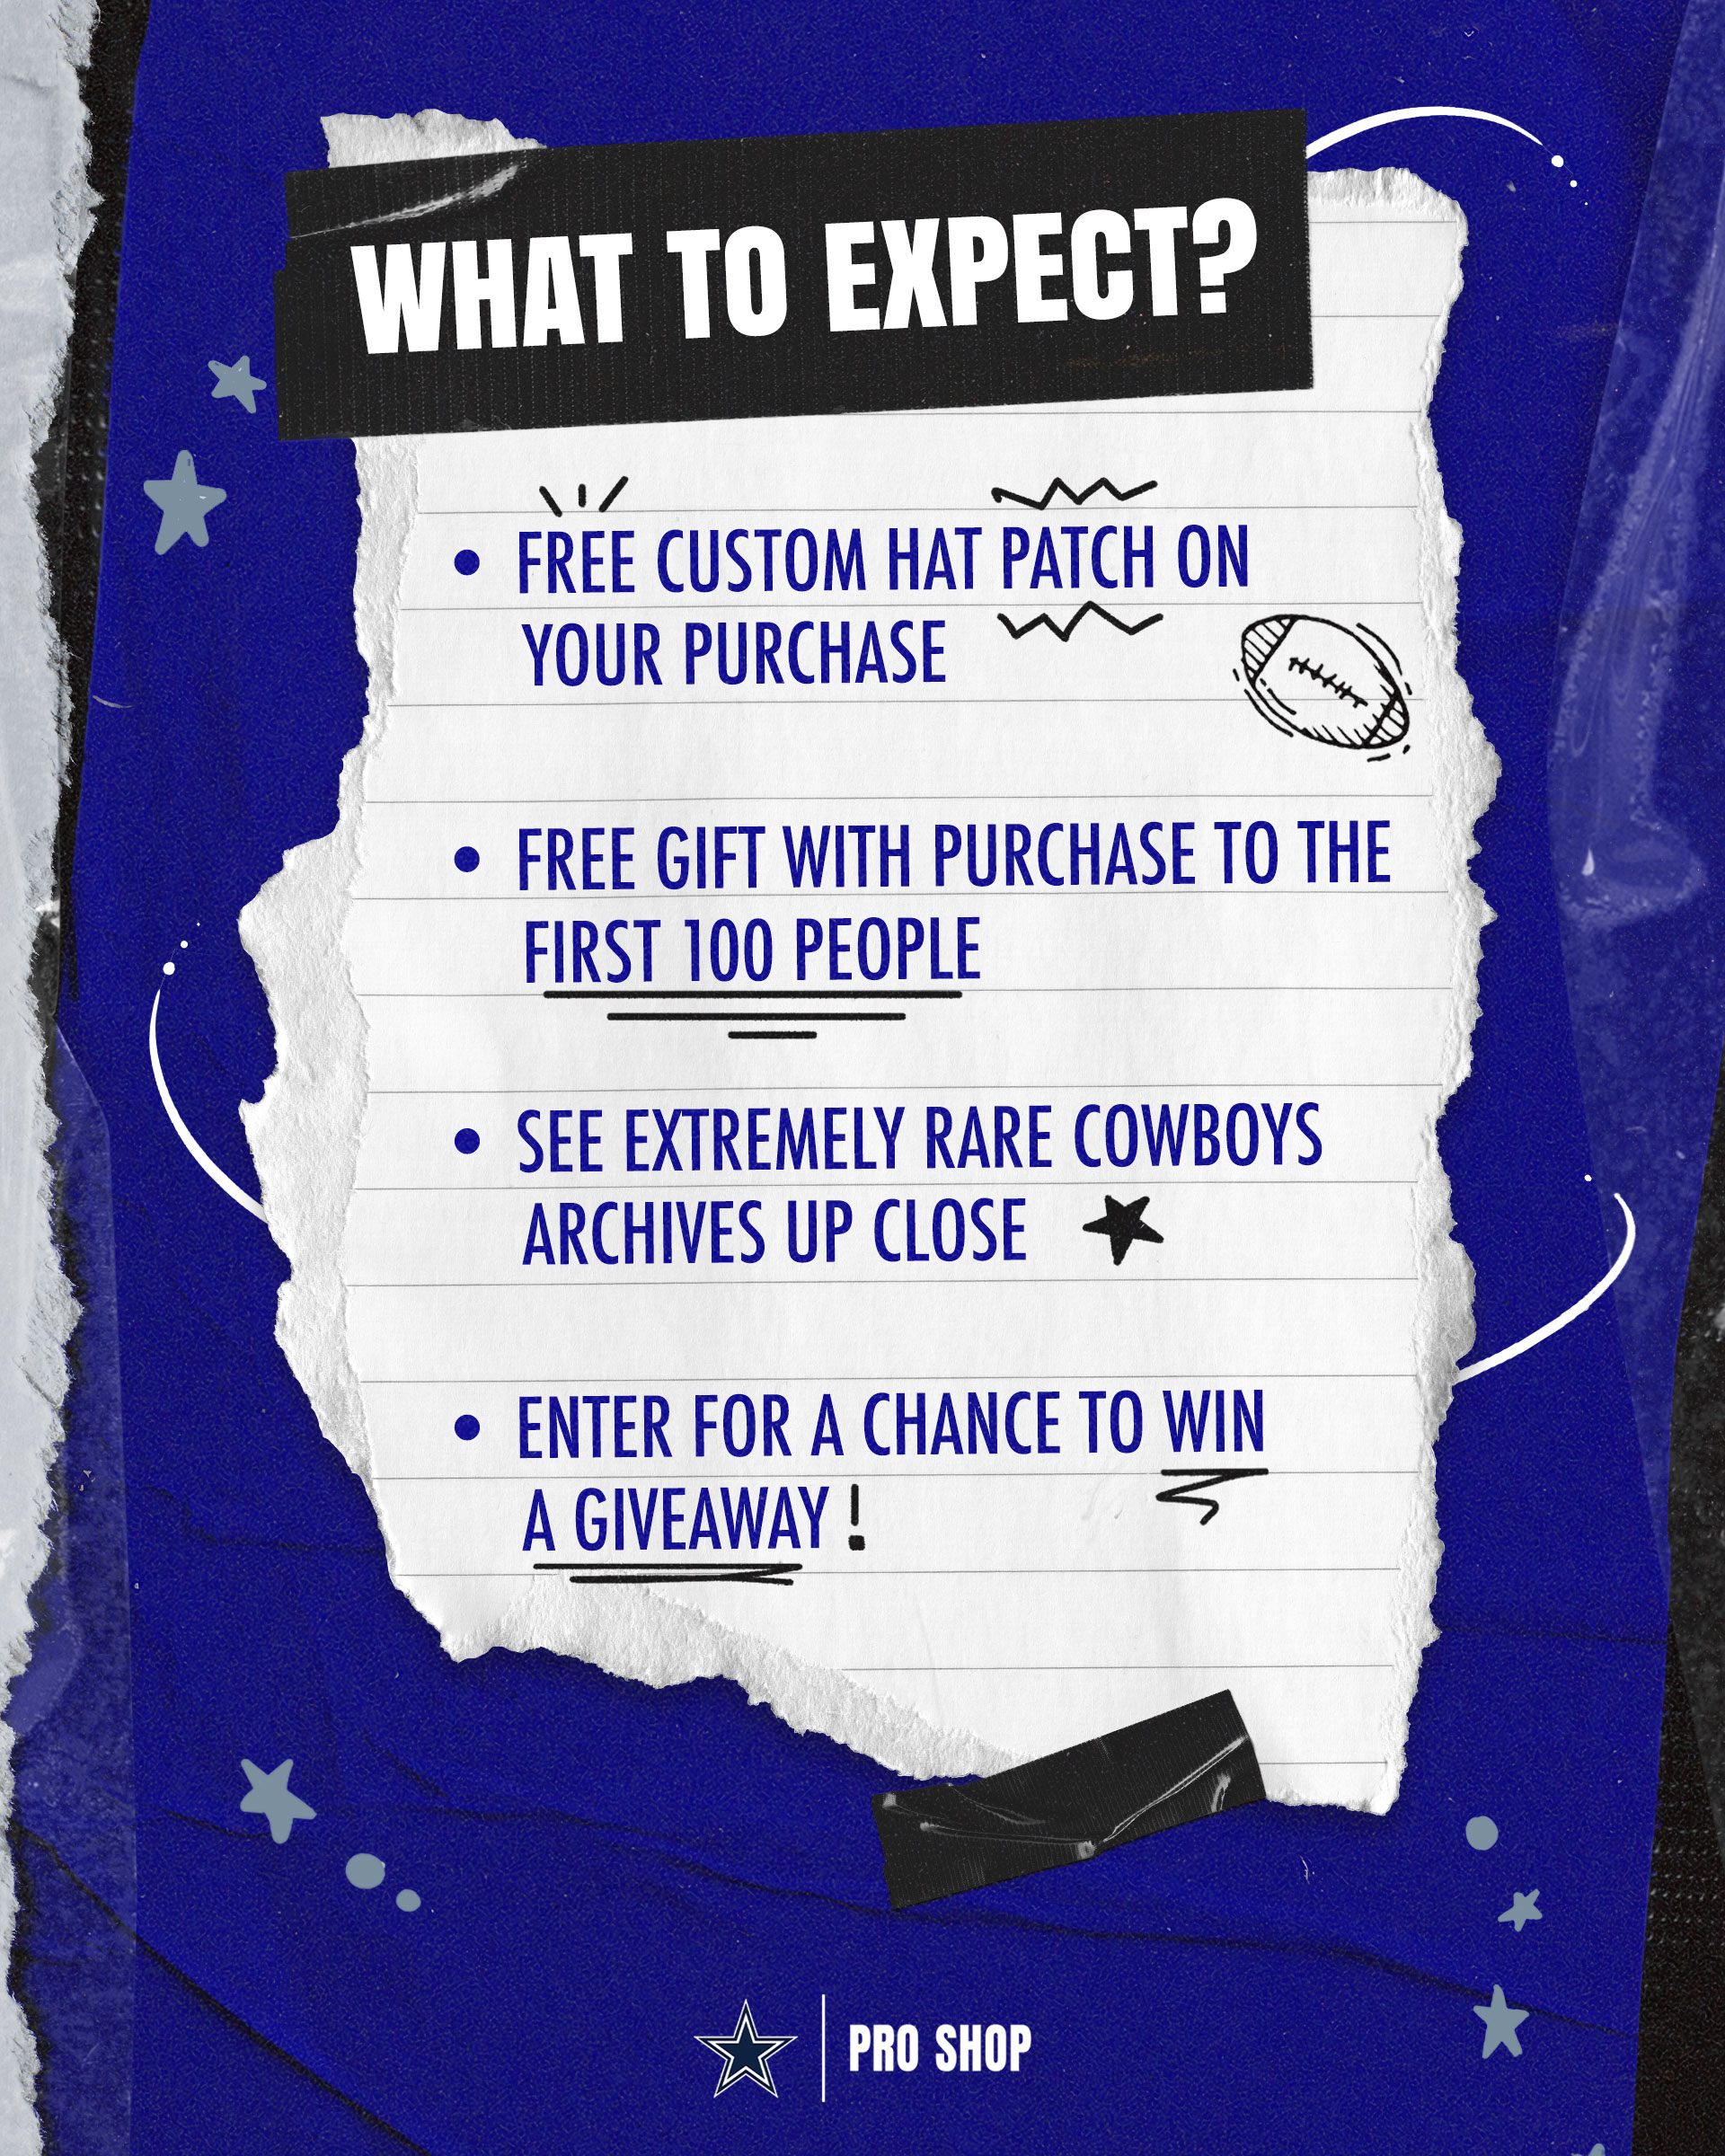 Dallas Cowboys Pro Shop (@cowboysproshop) • Instagram photos and videos